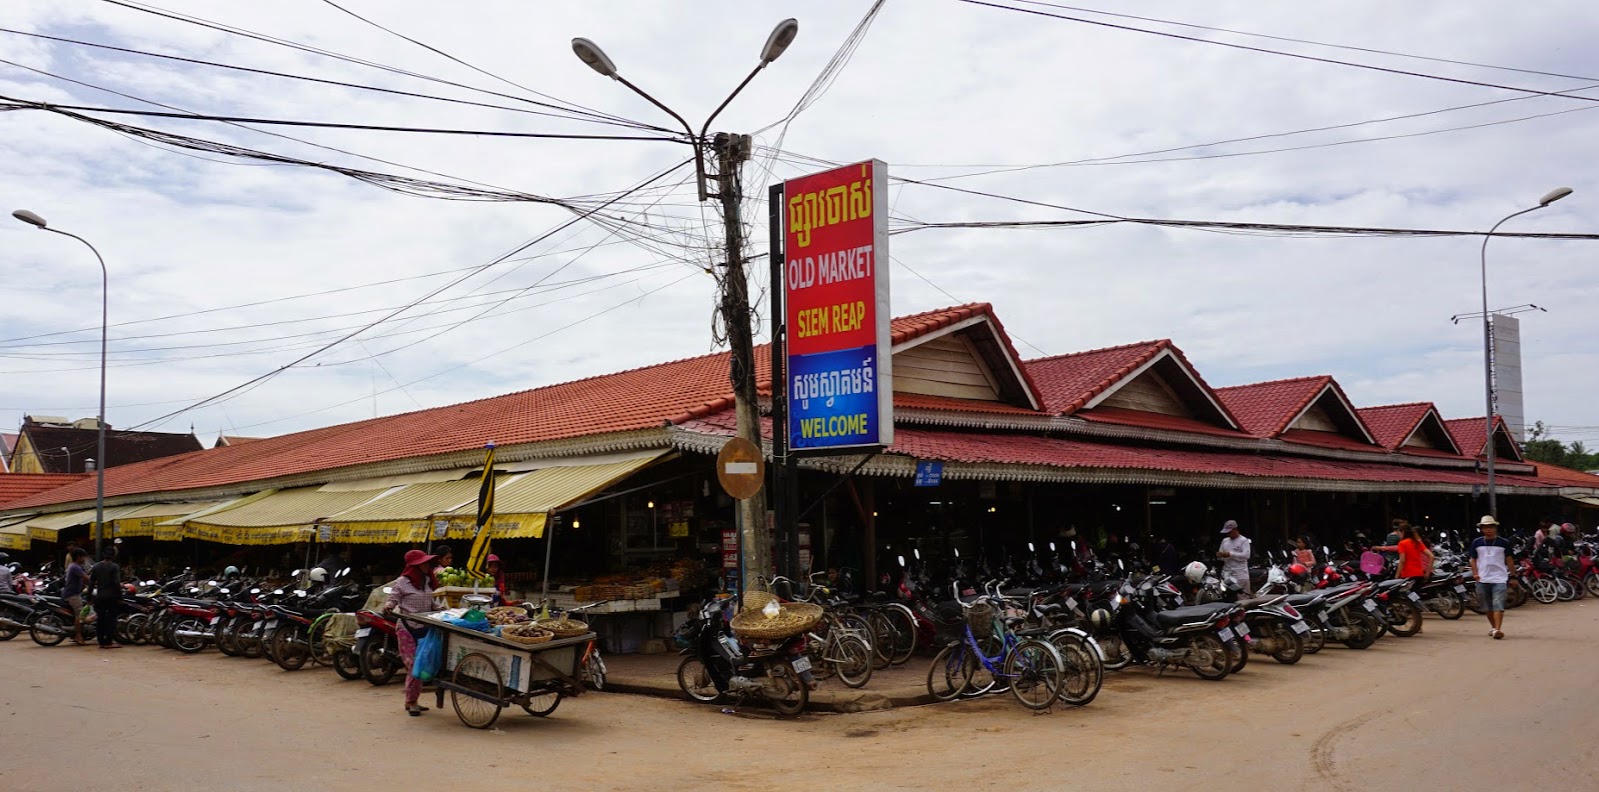 Old Market in Siem Reap